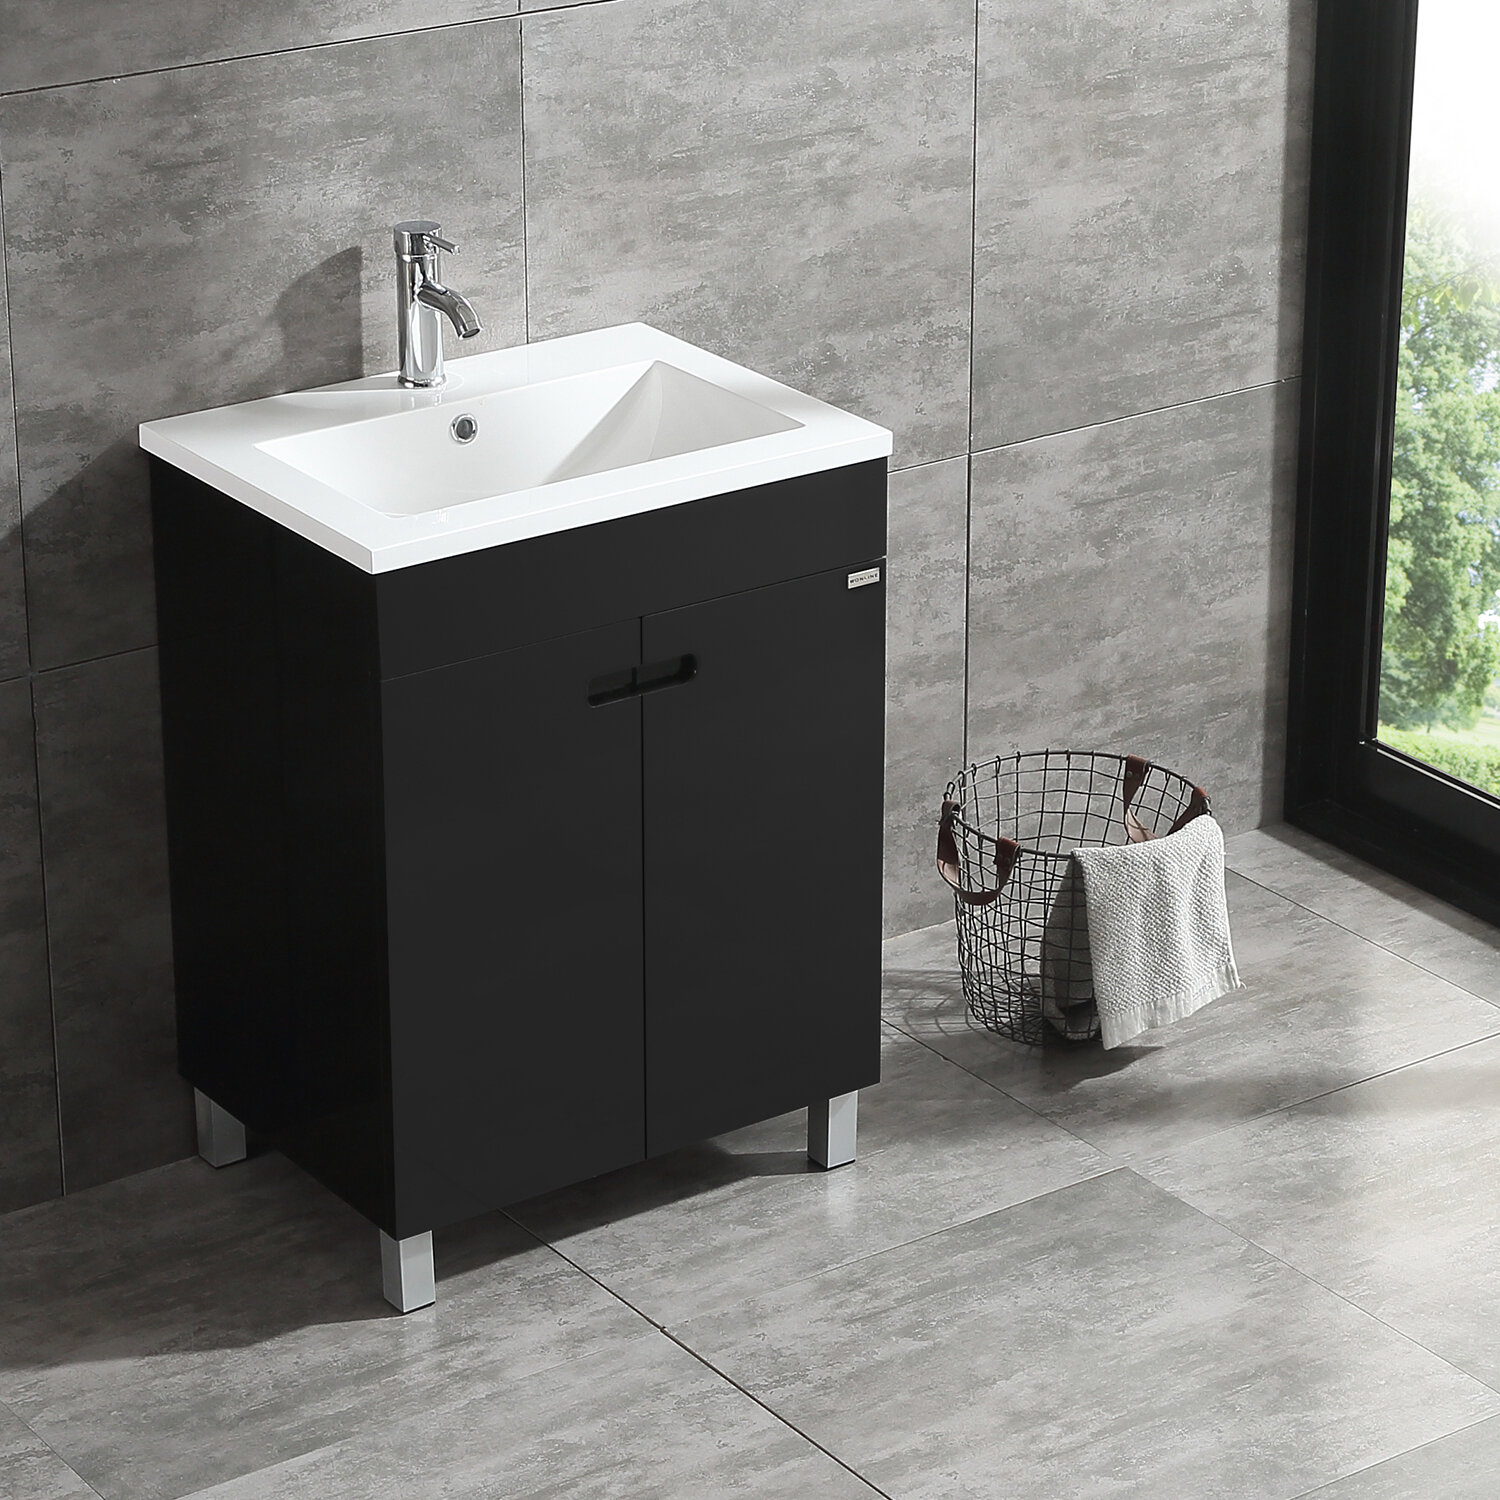 Wonline 24 Black Single Wood Bathroom Vanity Cabinet Reviews